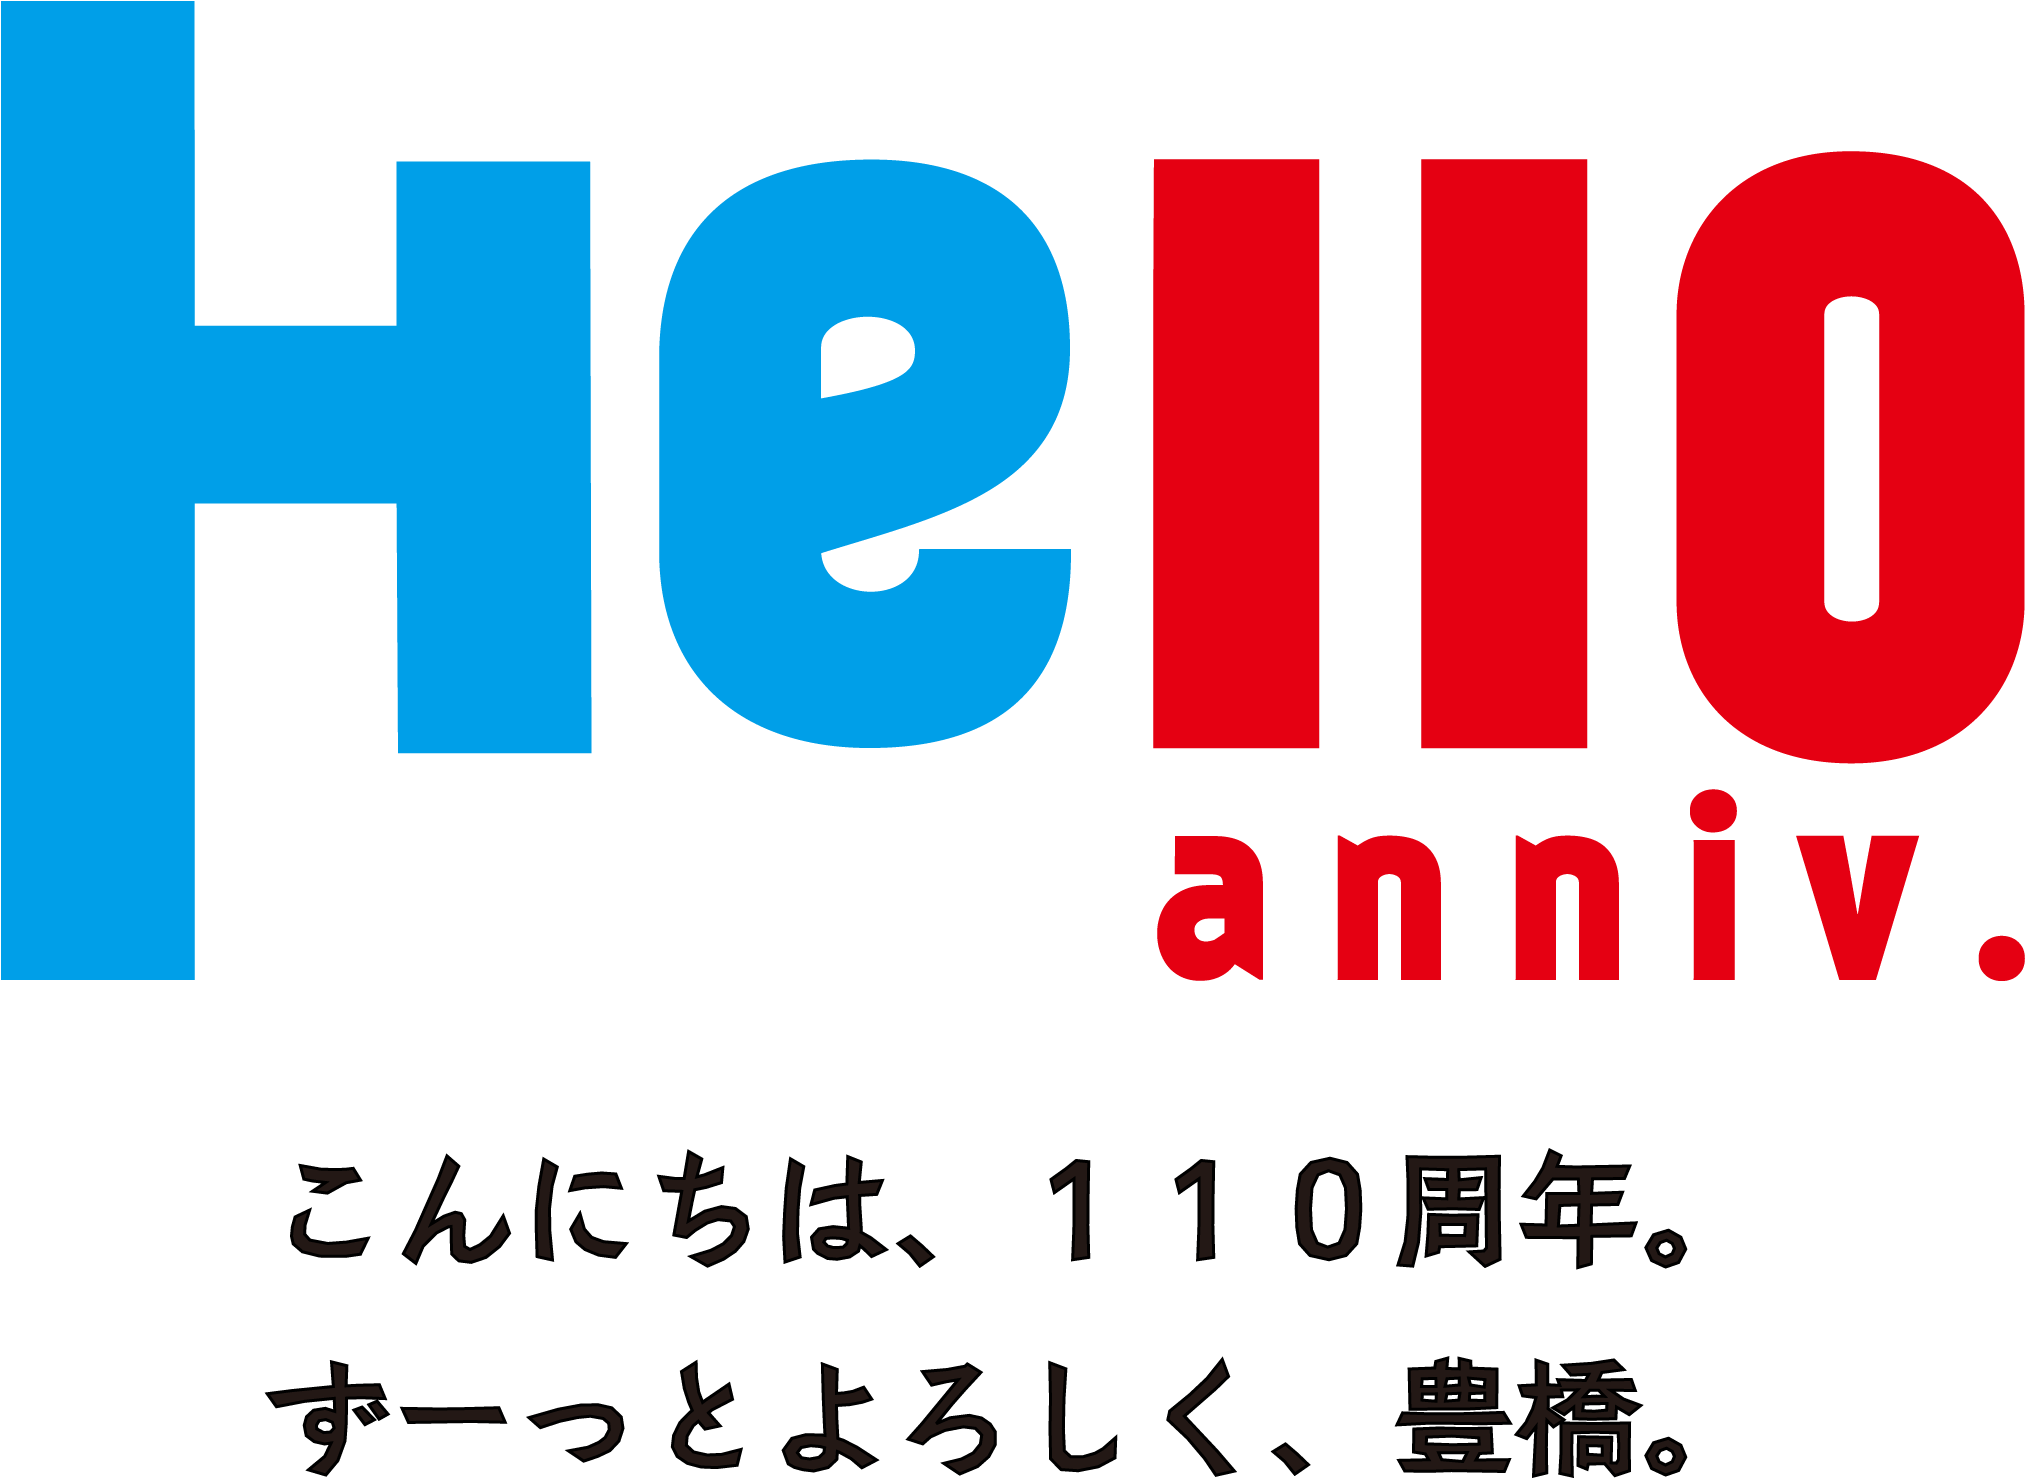 ロゴマークの使用申込方法/豊橋市 Lg Logo Png - 10 周年 Clipart (2024x1491), Png Download